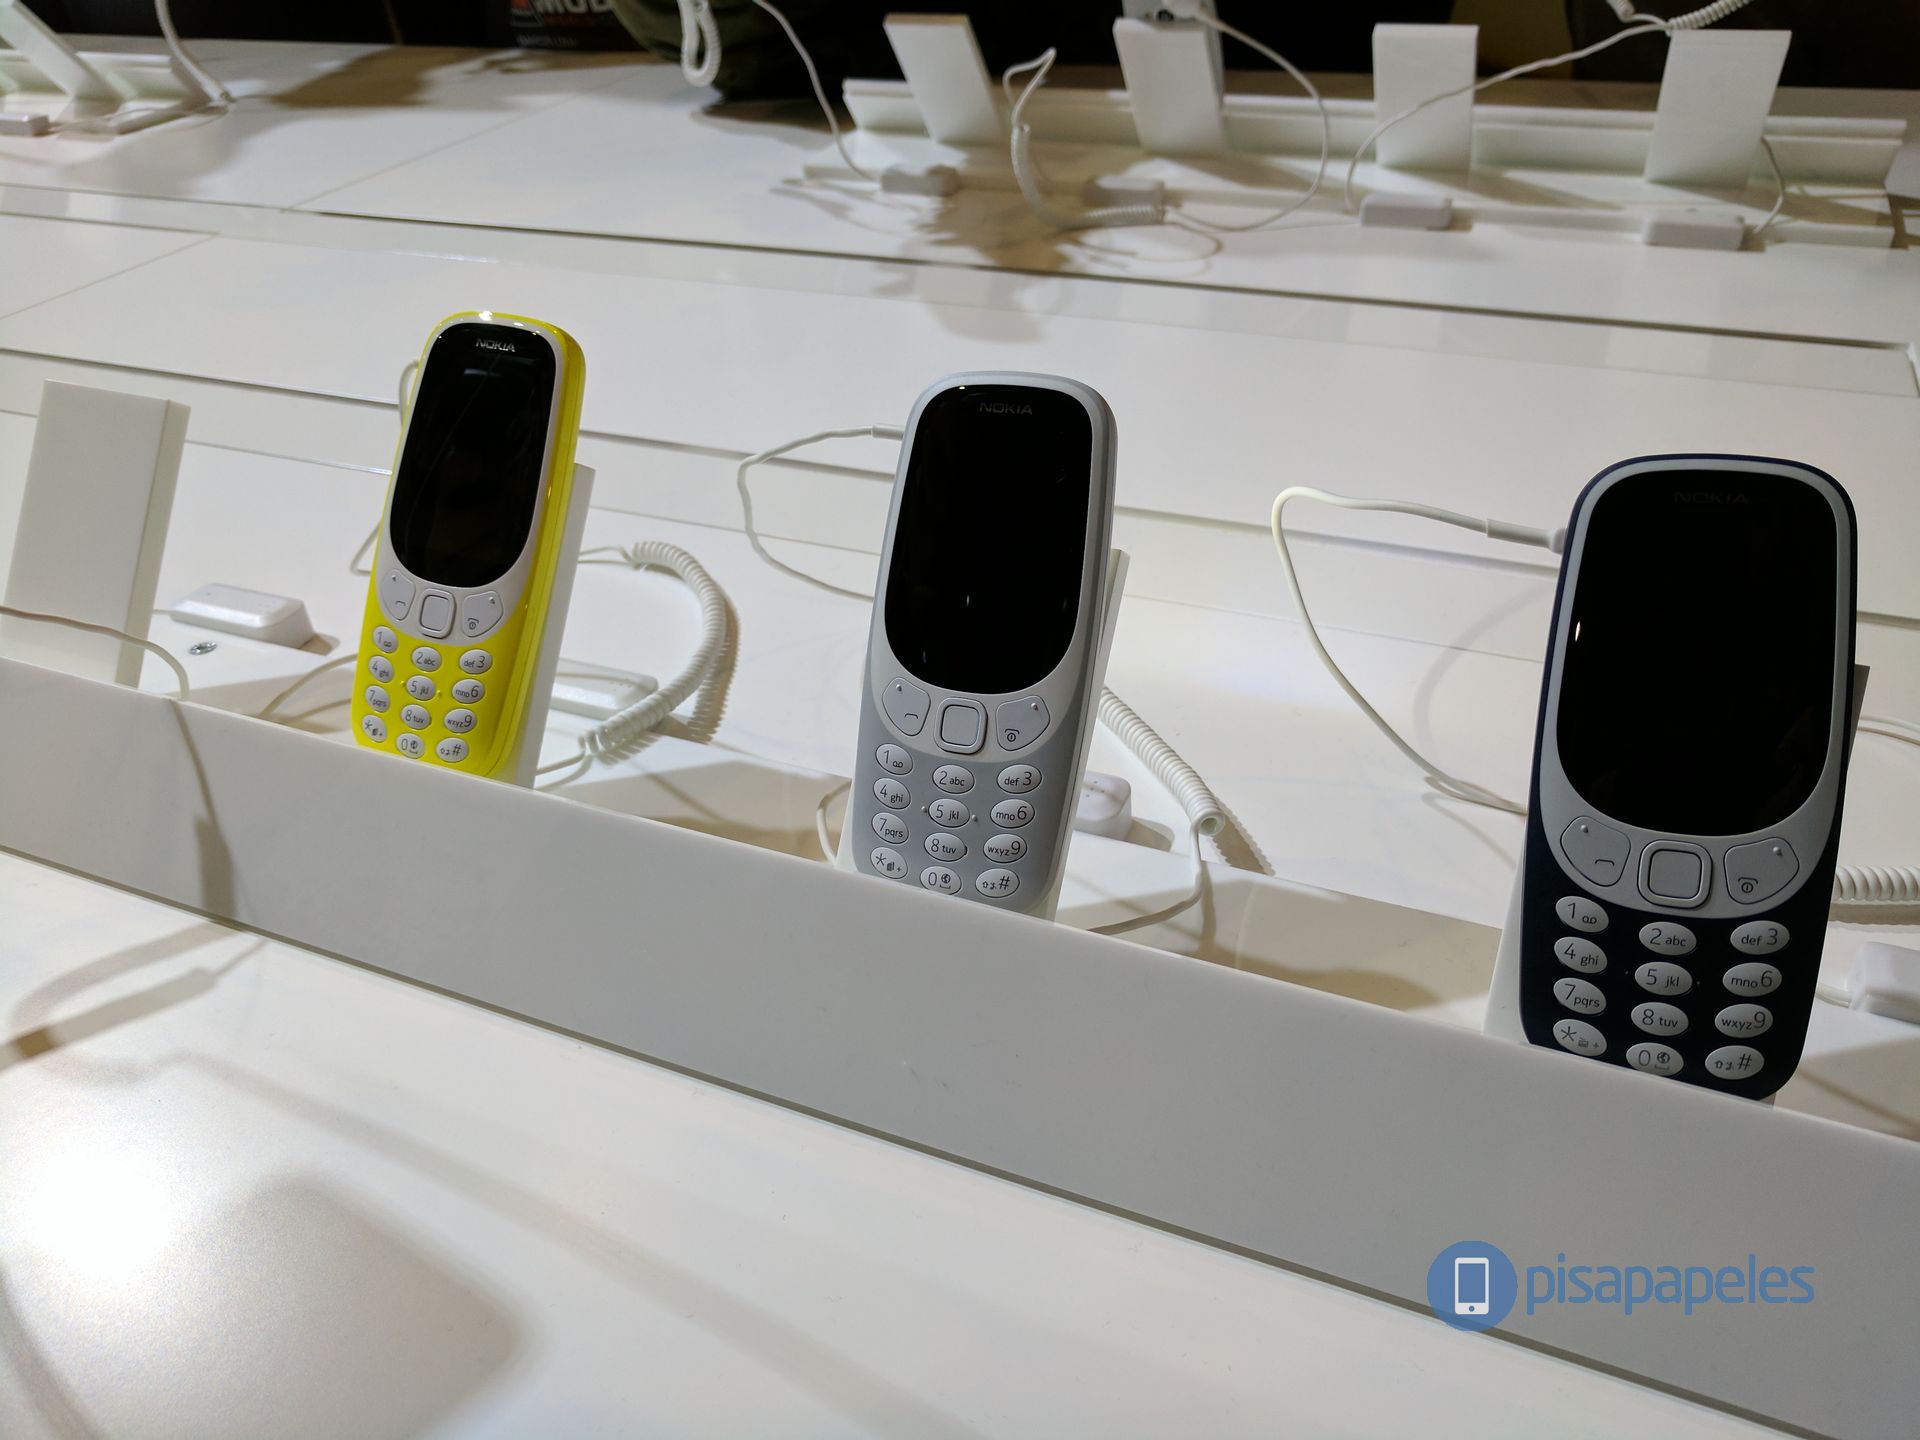 الانطباع الأول عن هاتف Nokia 3310 # MWC17 134